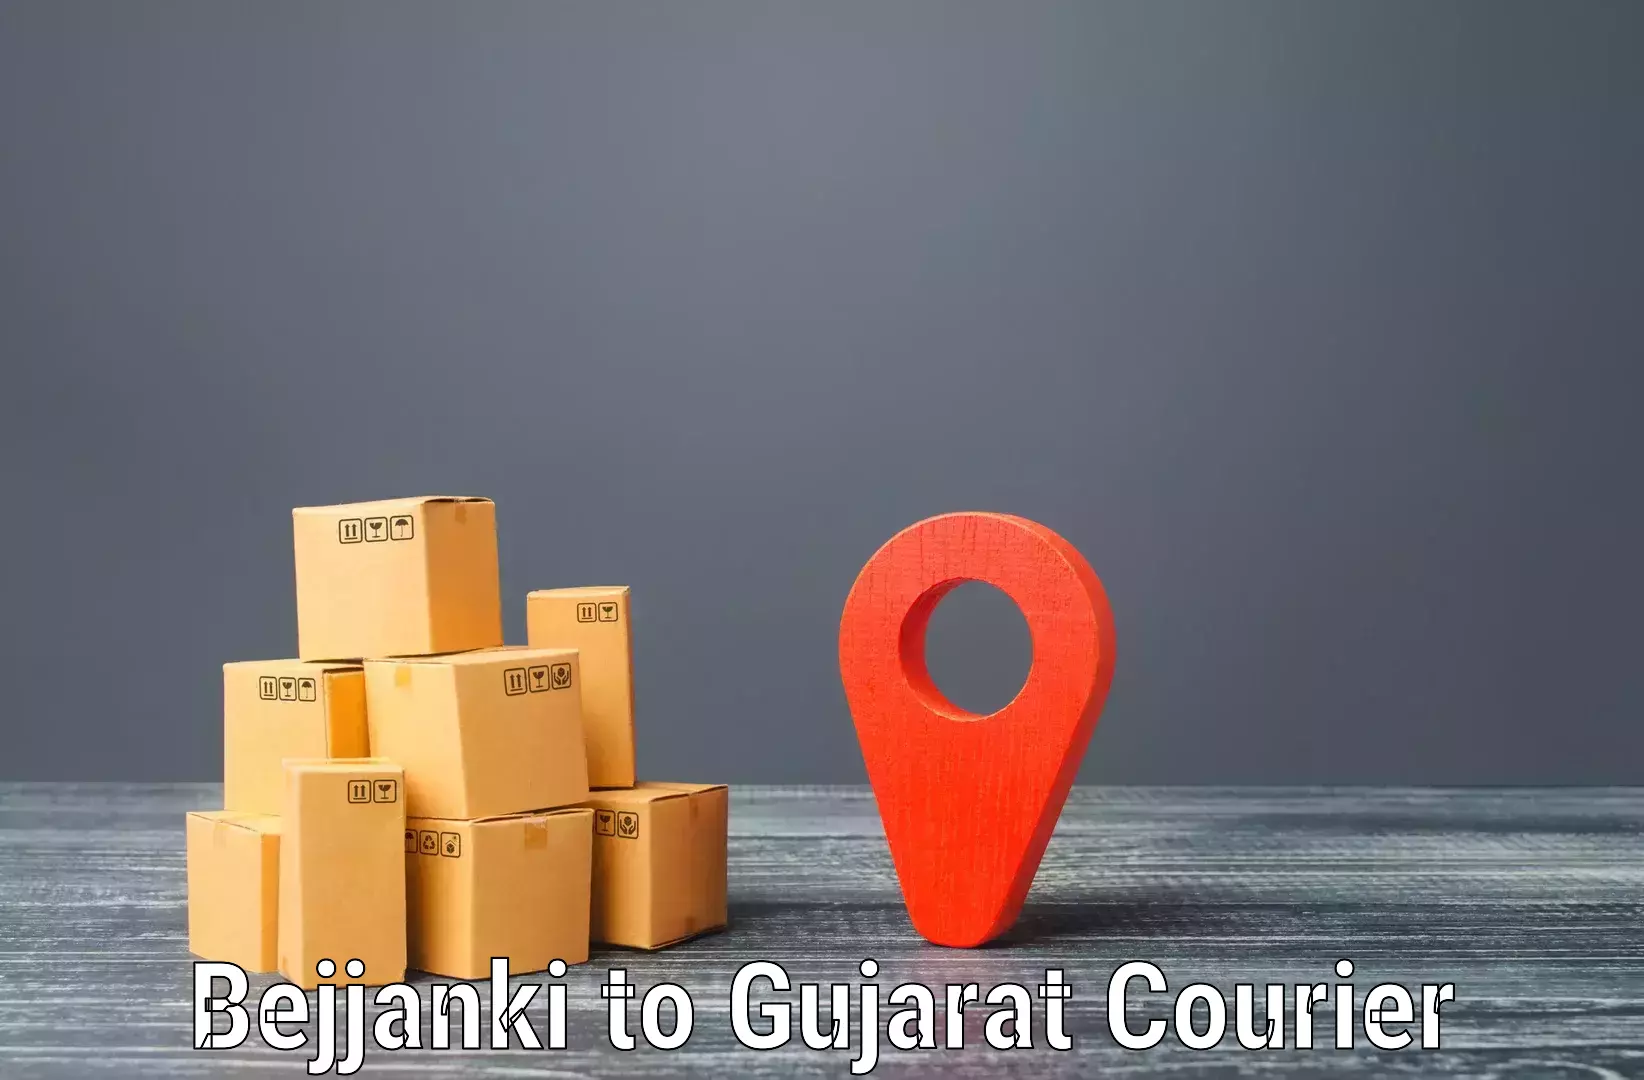 Quality courier partnerships Bejjanki to Kadana